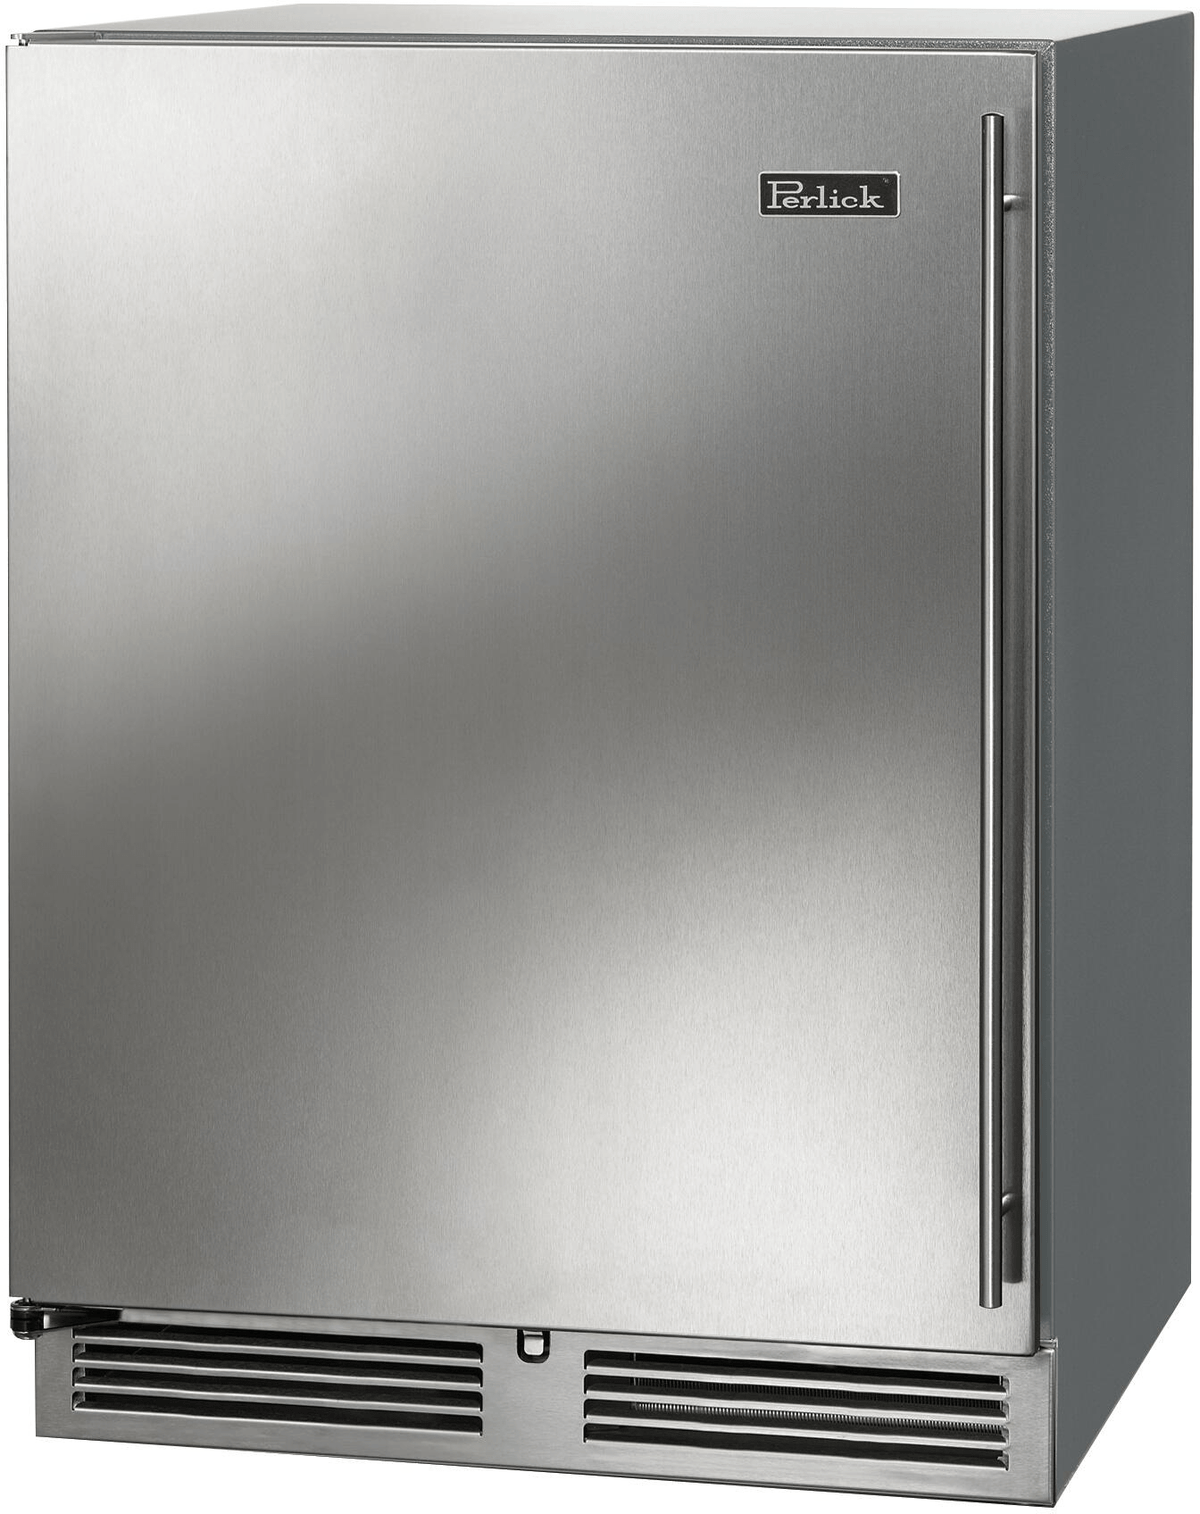 Perlick Refrigeration + Cooling Stainless Steel Glass Door - Left Hinge Perlick 24&quot; C-Series Built-In Outdoor Refrigerator / HC24RO-4